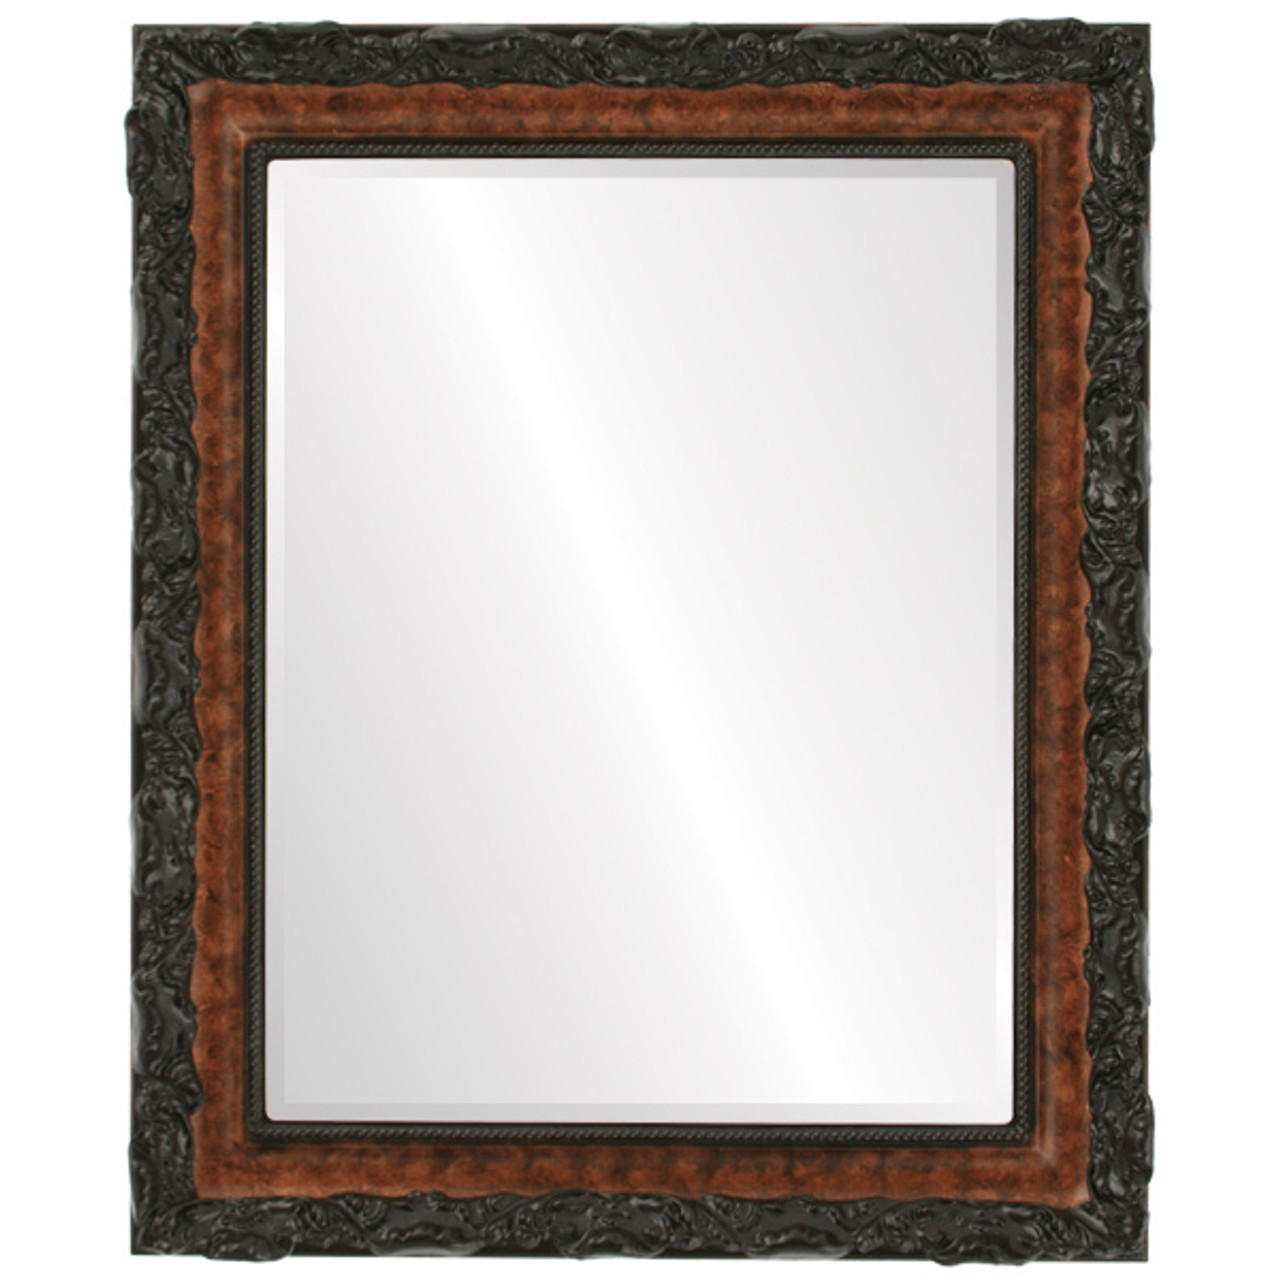 Round Frameless 42 Wide Beveled Mirror